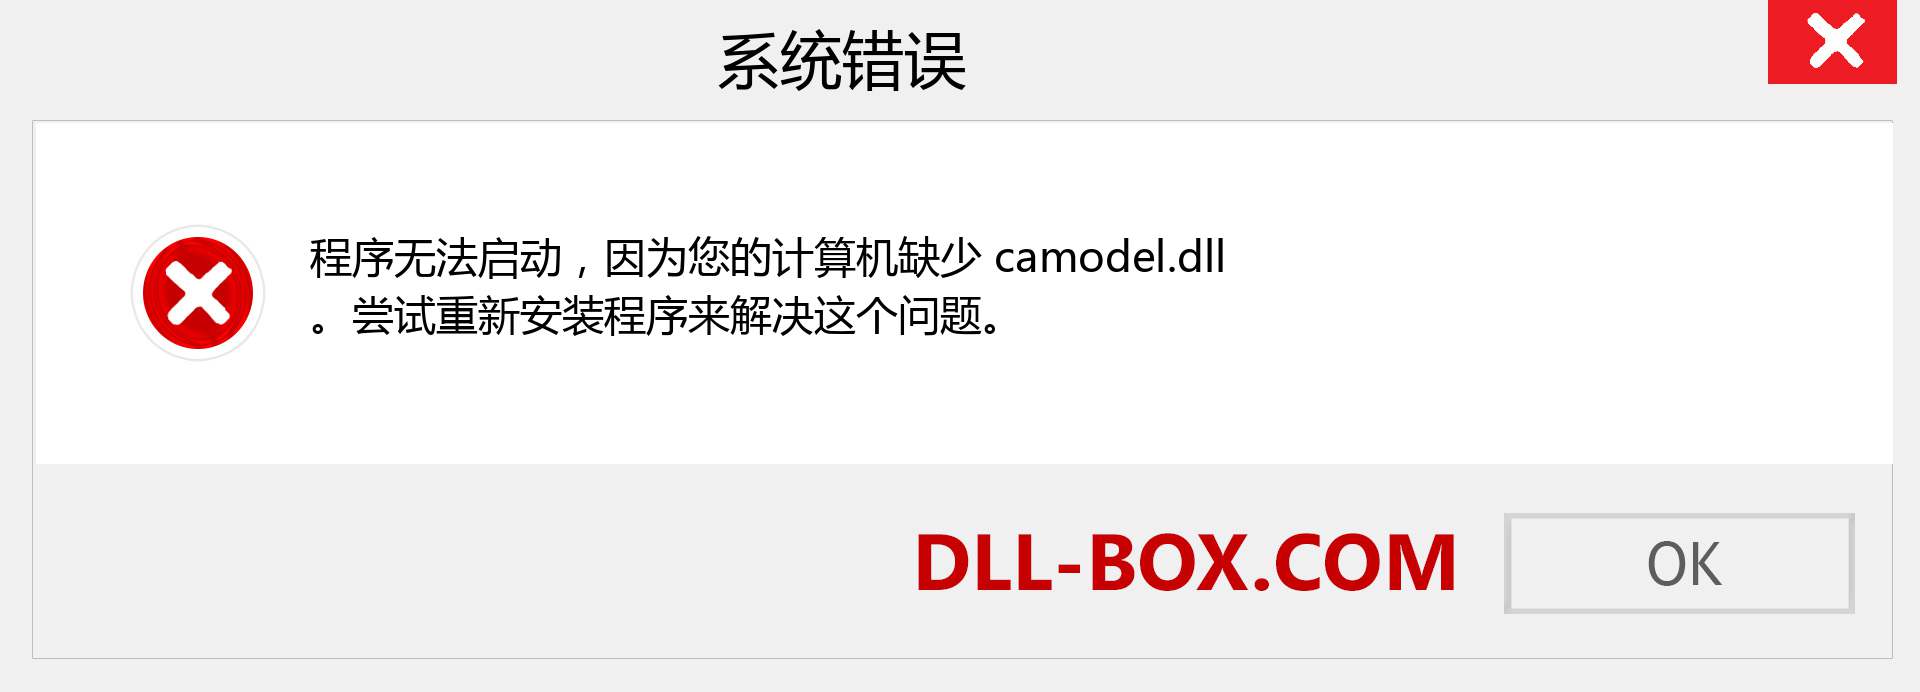 camodel.dll 文件丢失？。 适用于 Windows 7、8、10 的下载 - 修复 Windows、照片、图像上的 camodel dll 丢失错误